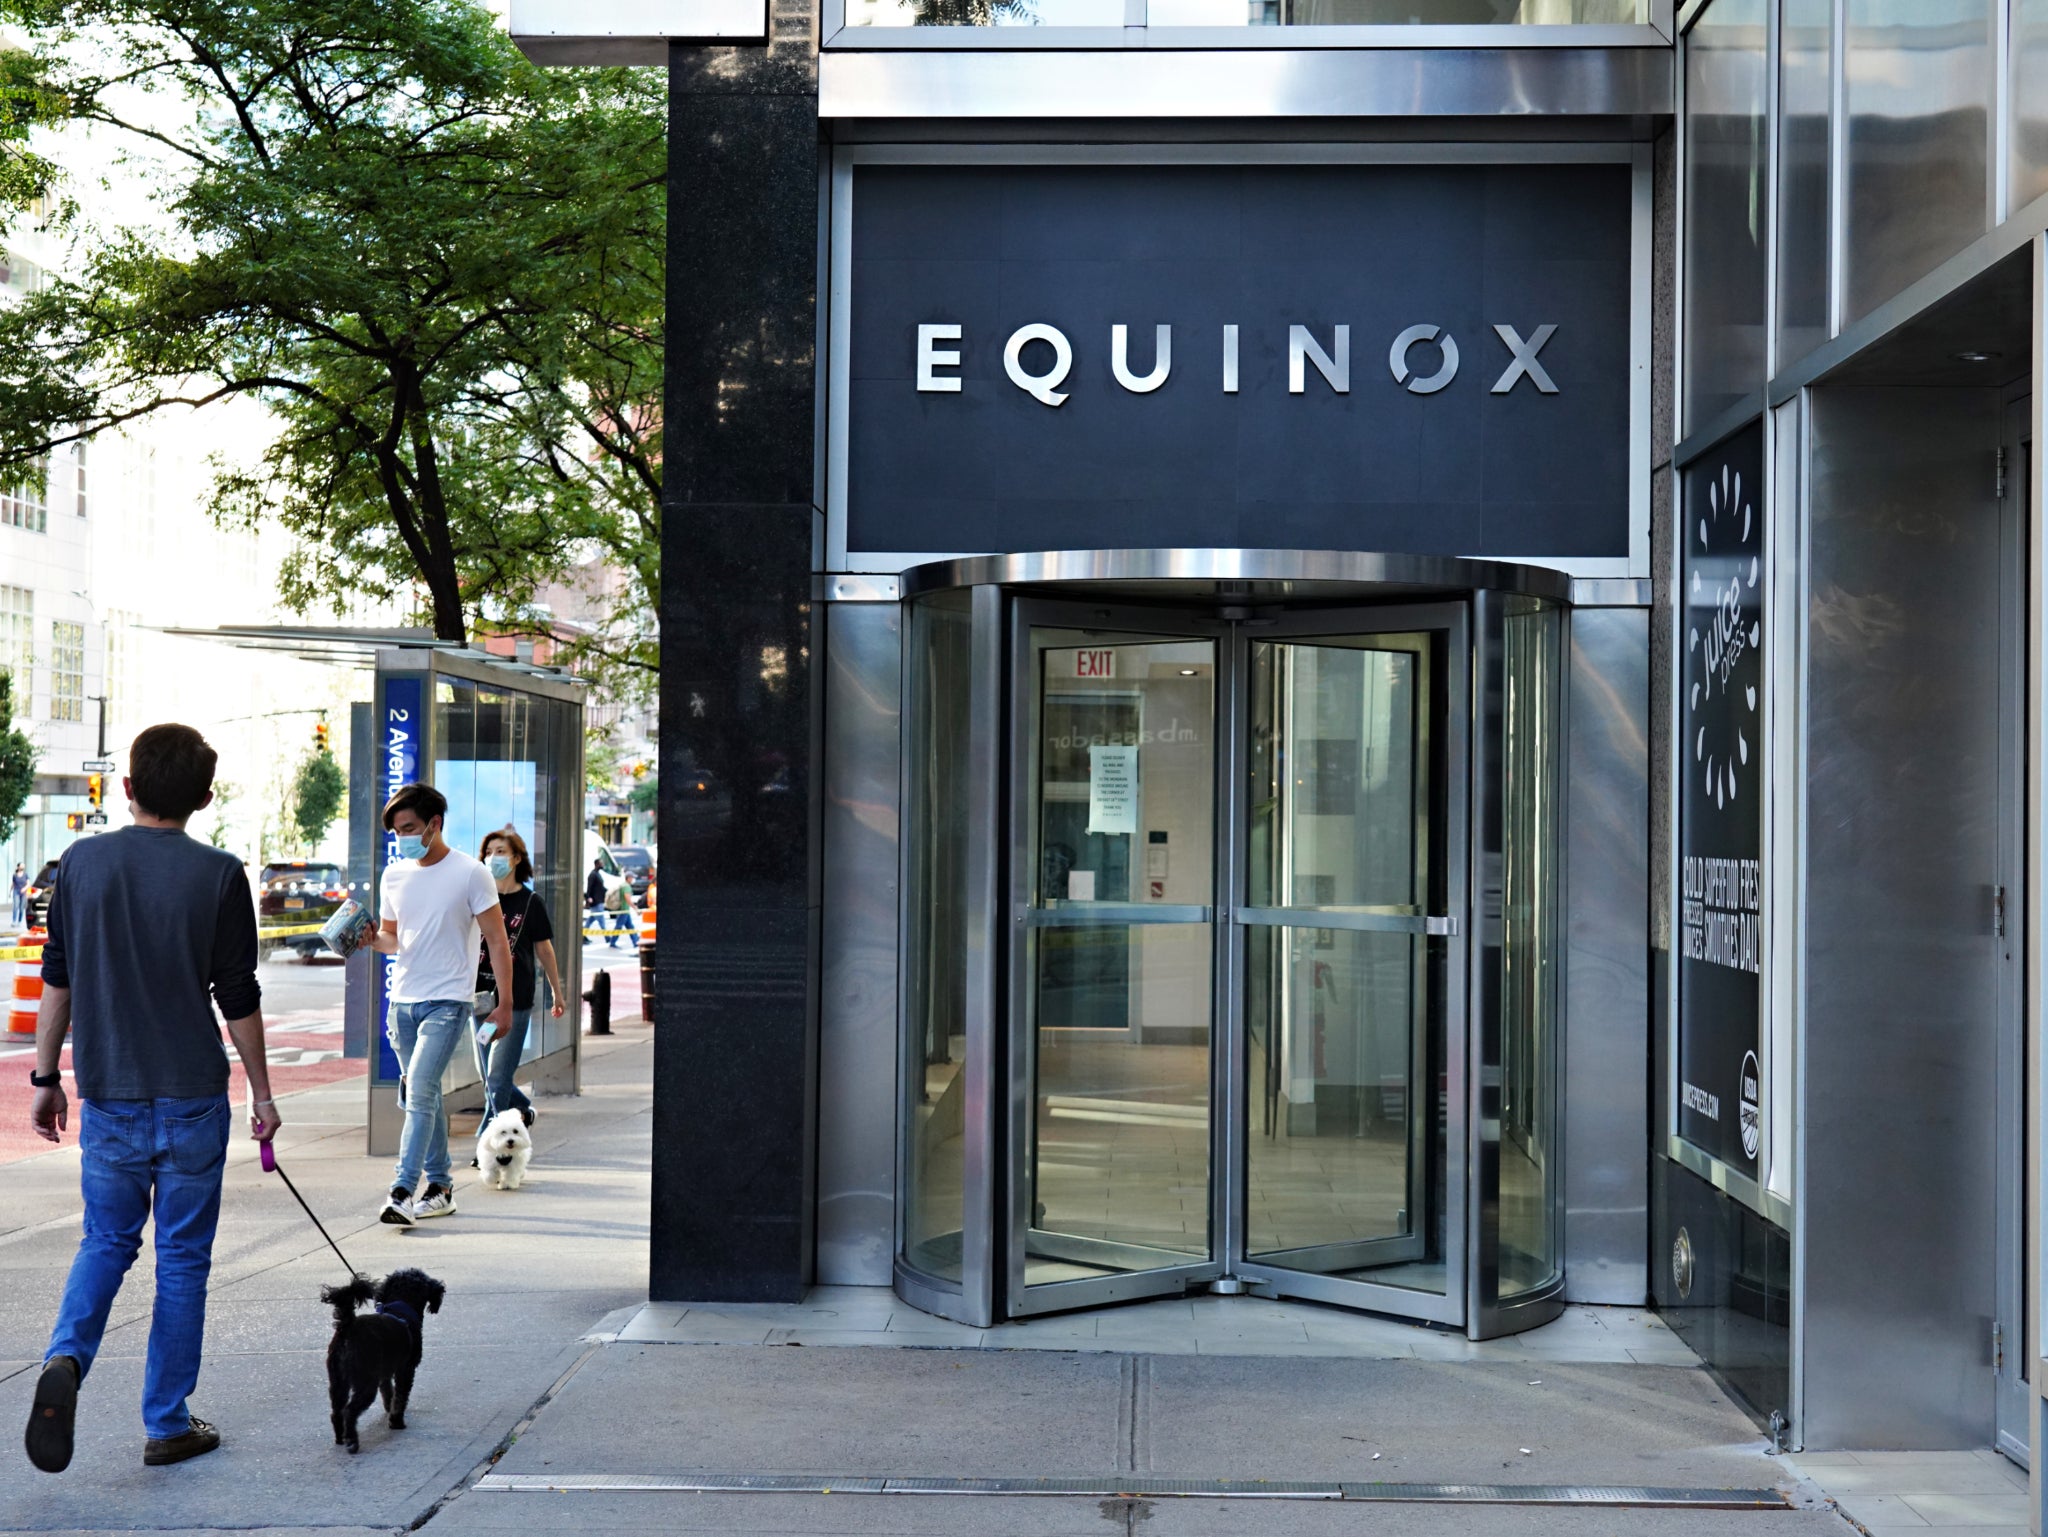 Membership at Equinox starts at £200 per month